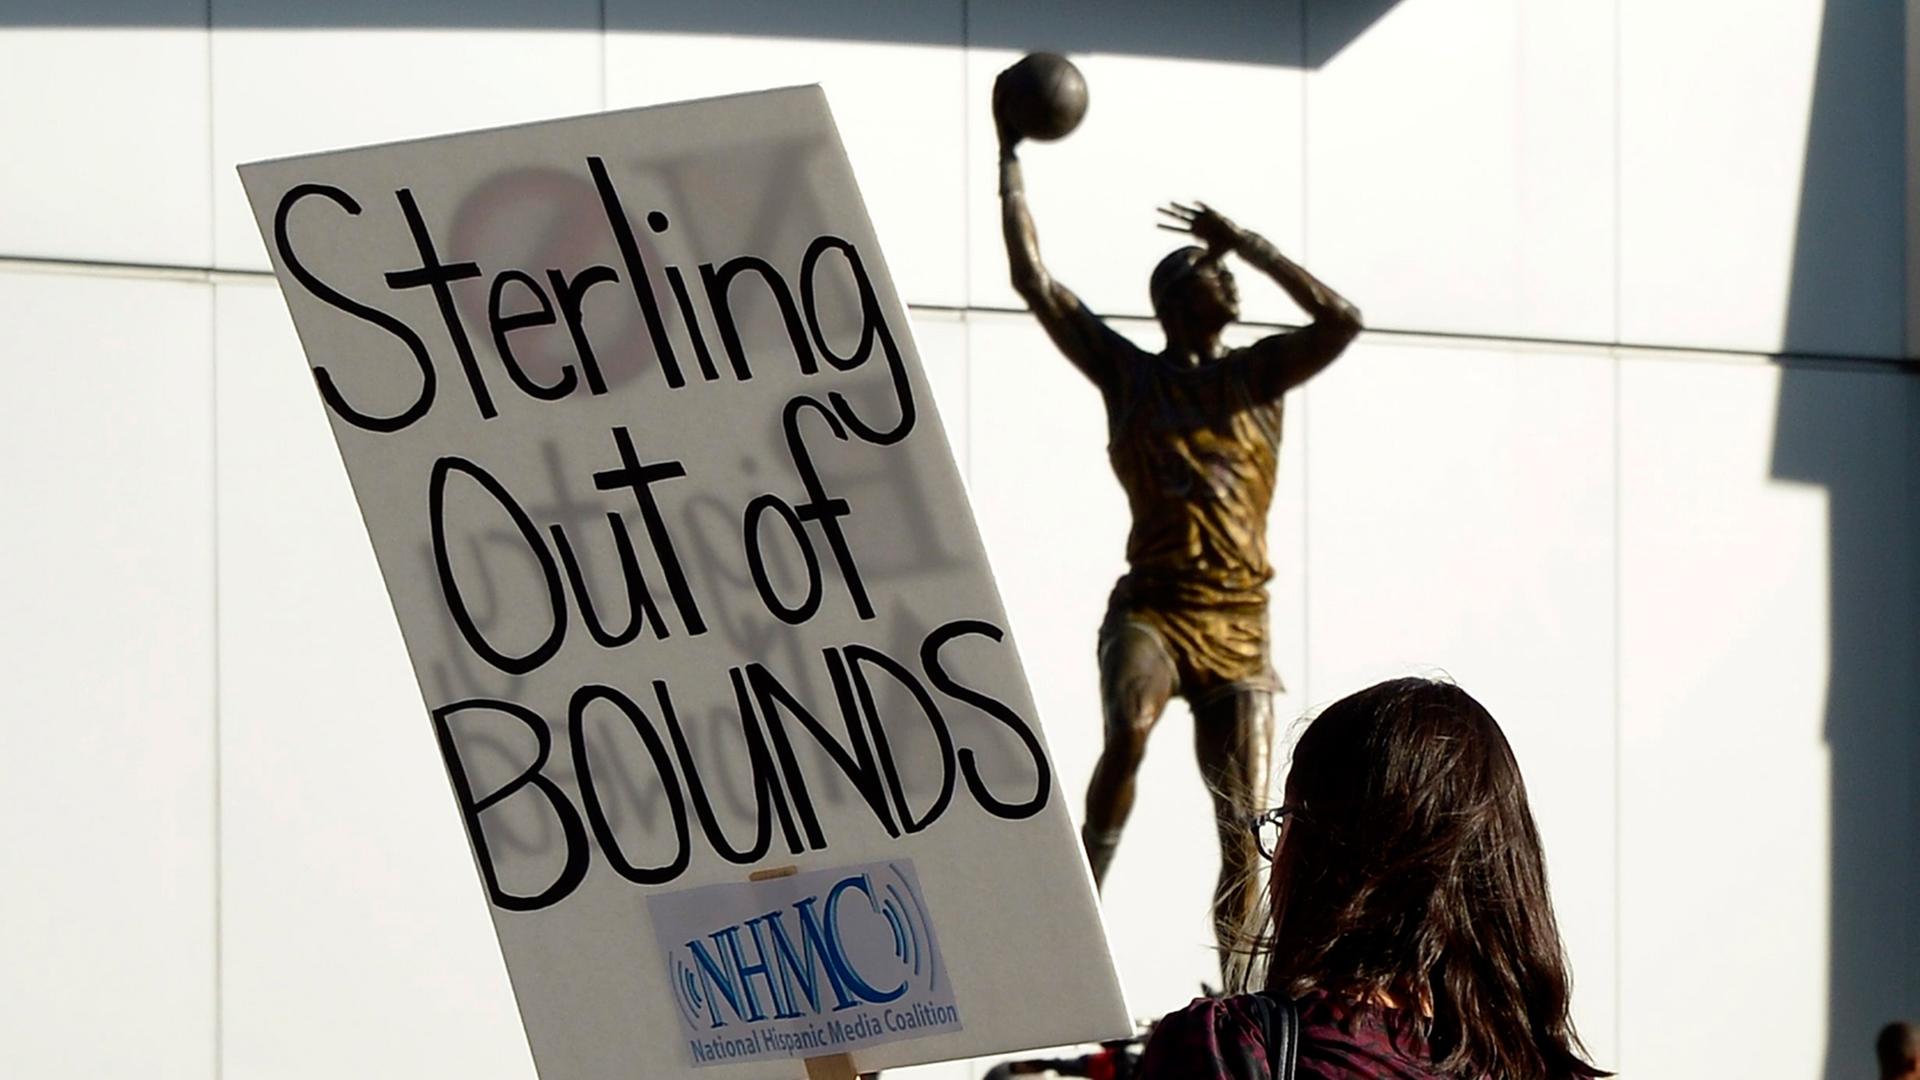 Ein Fan hält bei den Protesten zur "Los Angeles Clippers Conference" ein Schild mit der Aufschrift "Sterling out of Bounds" in den Händen.